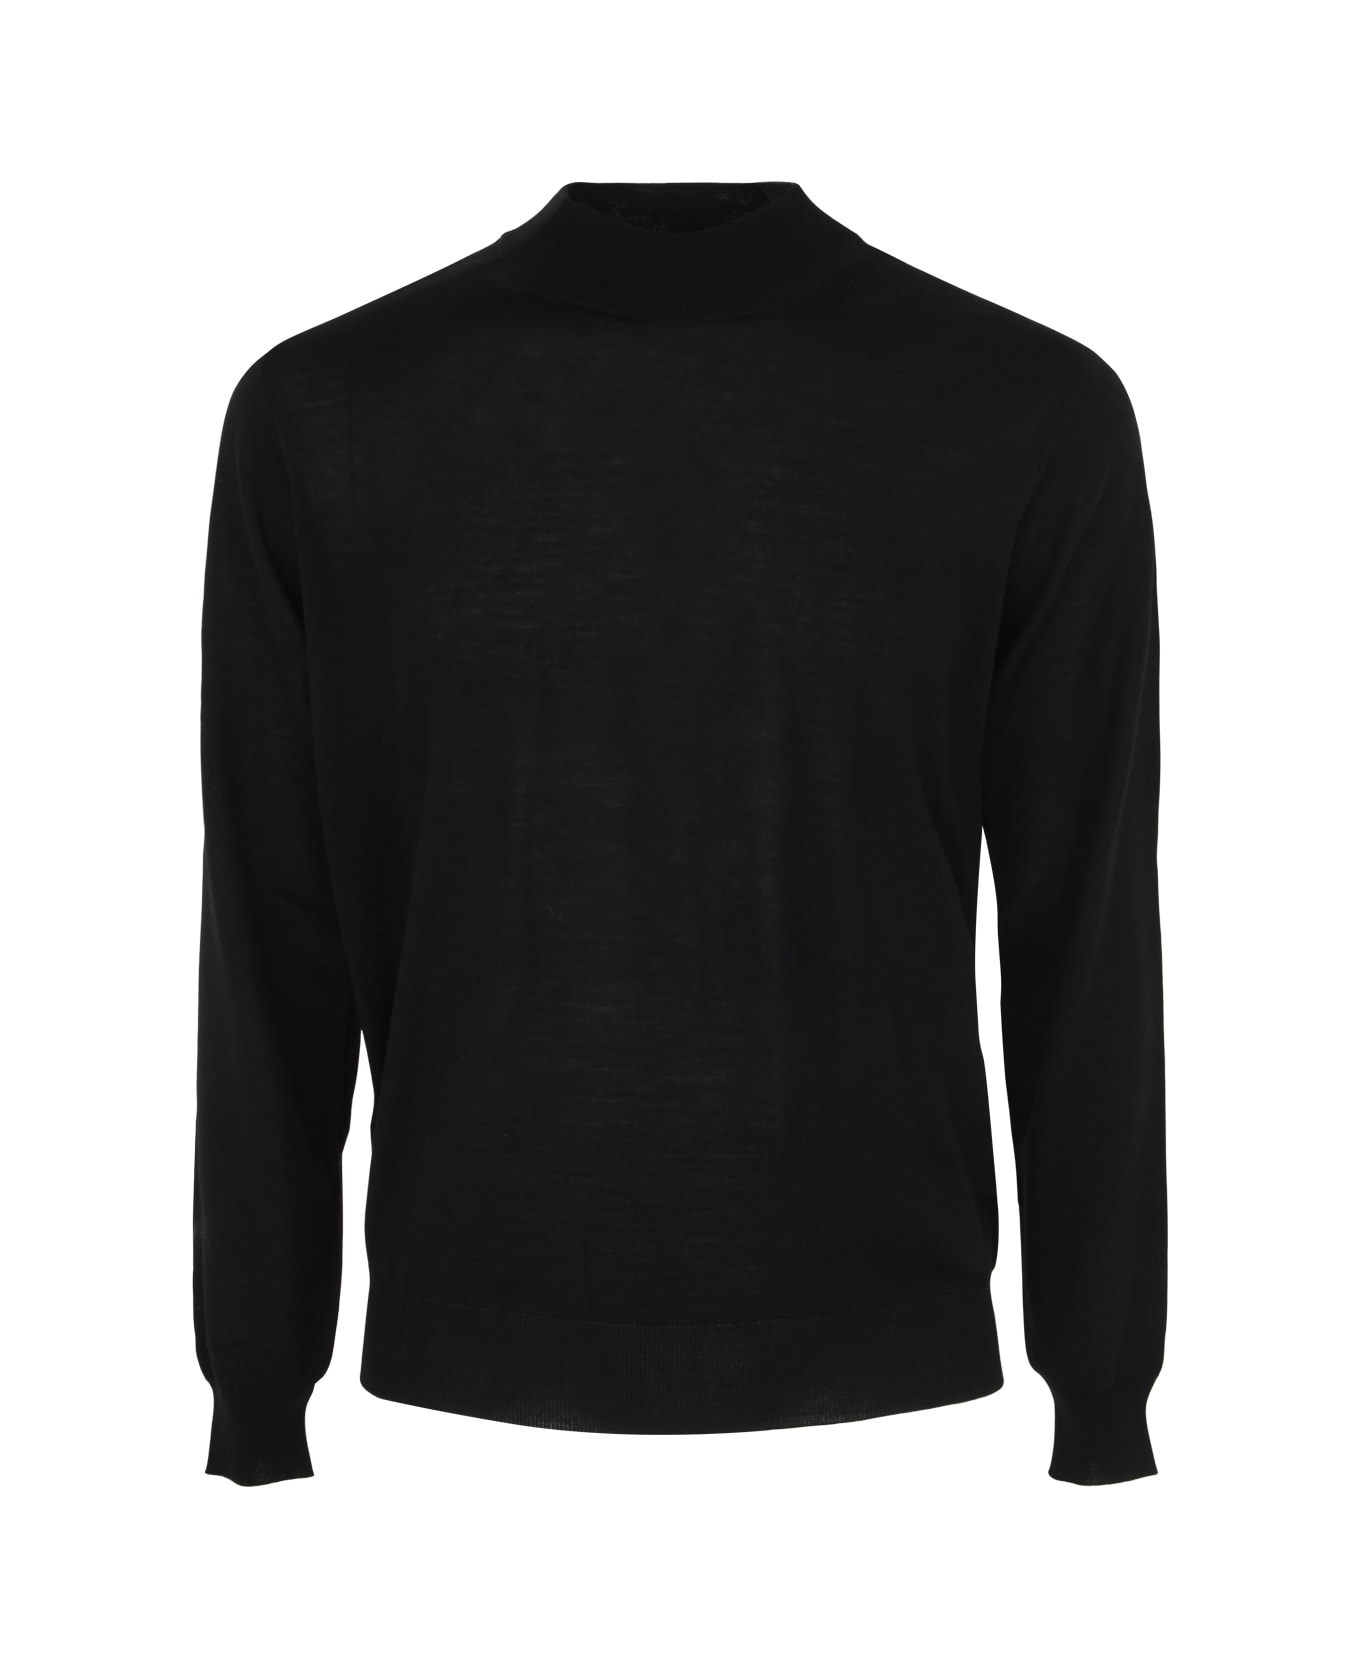 Filippo De Laurentiis Royal Merino Long Sleeves High Neck Sweater - Black